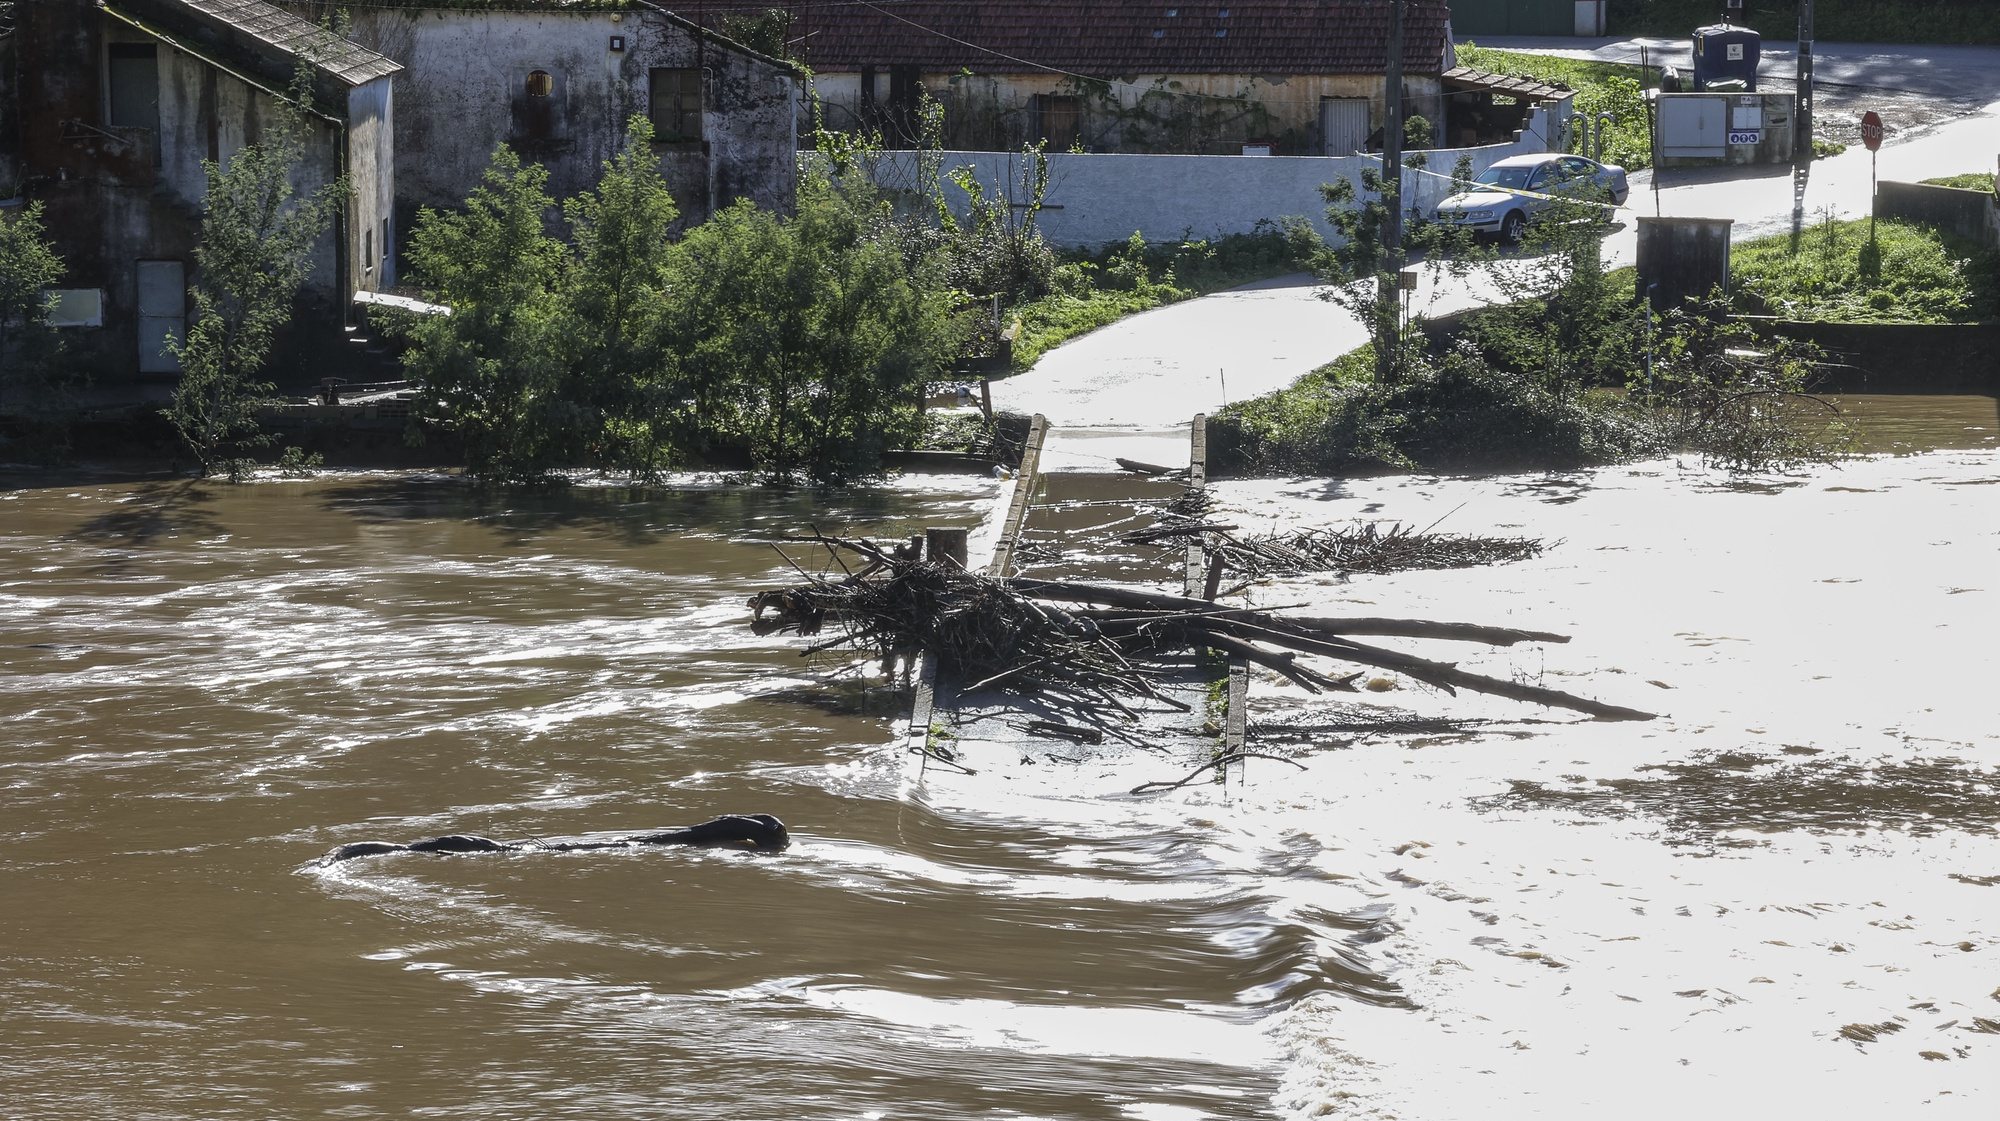 A subida das águas do Rio Ceira devido à chuva obrigou ao corte de algumas estradas na localidade de Cabouco, Ceira, Coimbra, 9 de janeiro de 2023. PAULO NOVAIS/LUSA